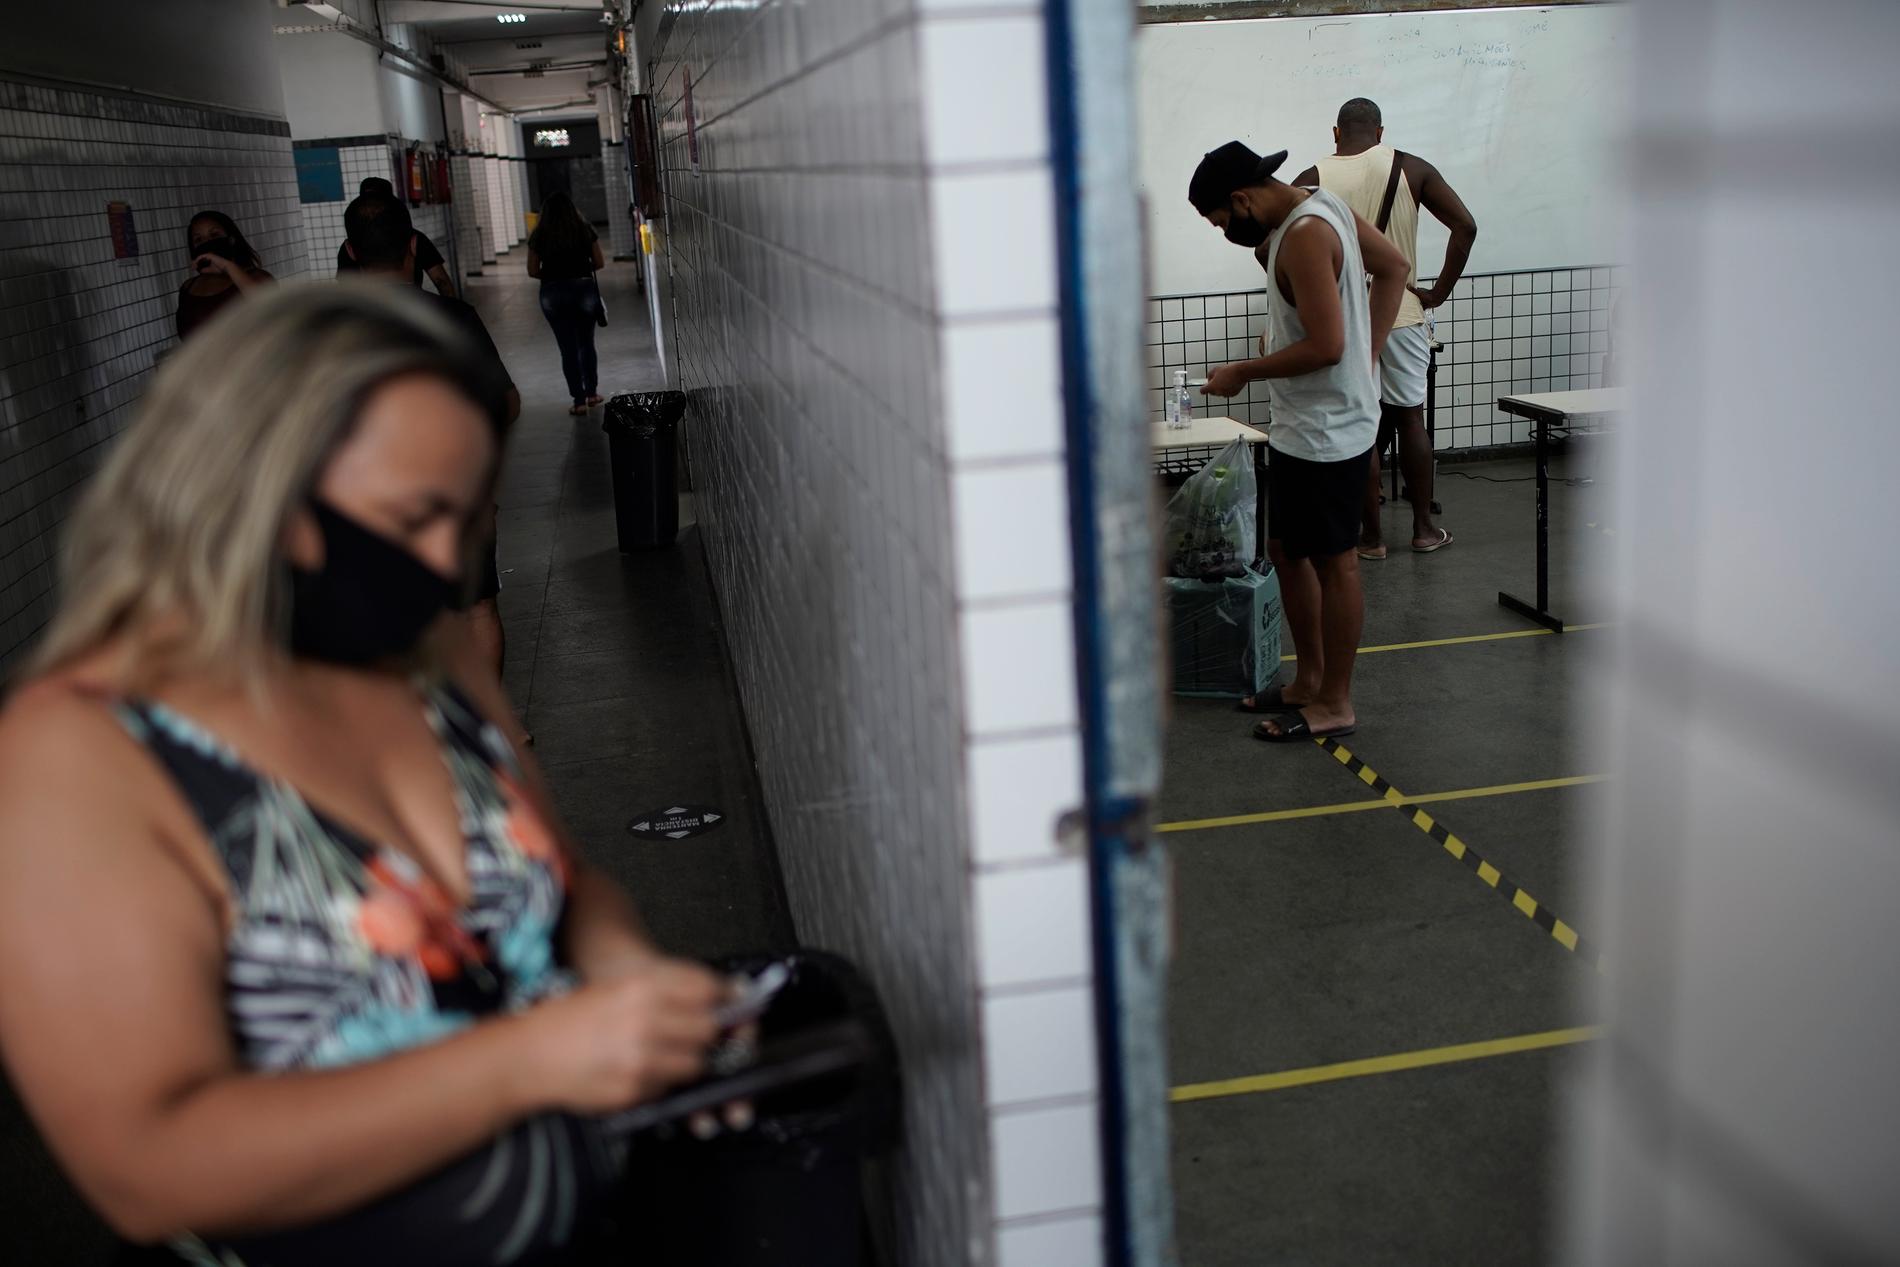 Väljare, här i Rio de Janeiro, uppmanas att ta med egna pennor till vallokalerna, att hålla avstånd, och att desinficera händerna flera gånger.